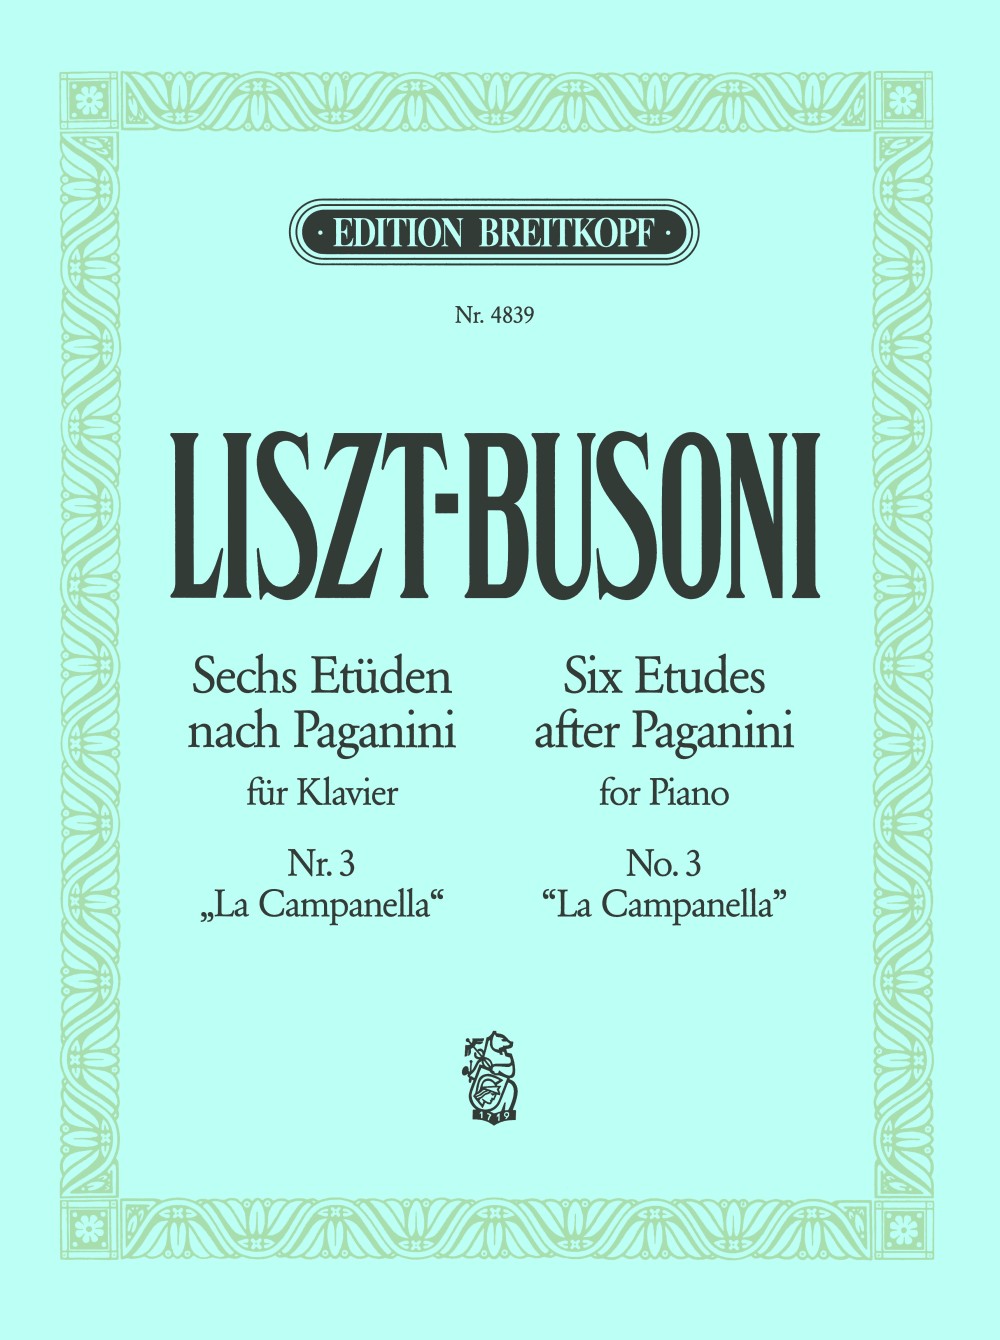 Liszt-Busoni: Etude No. 3 after Paganini - "La Campanella"